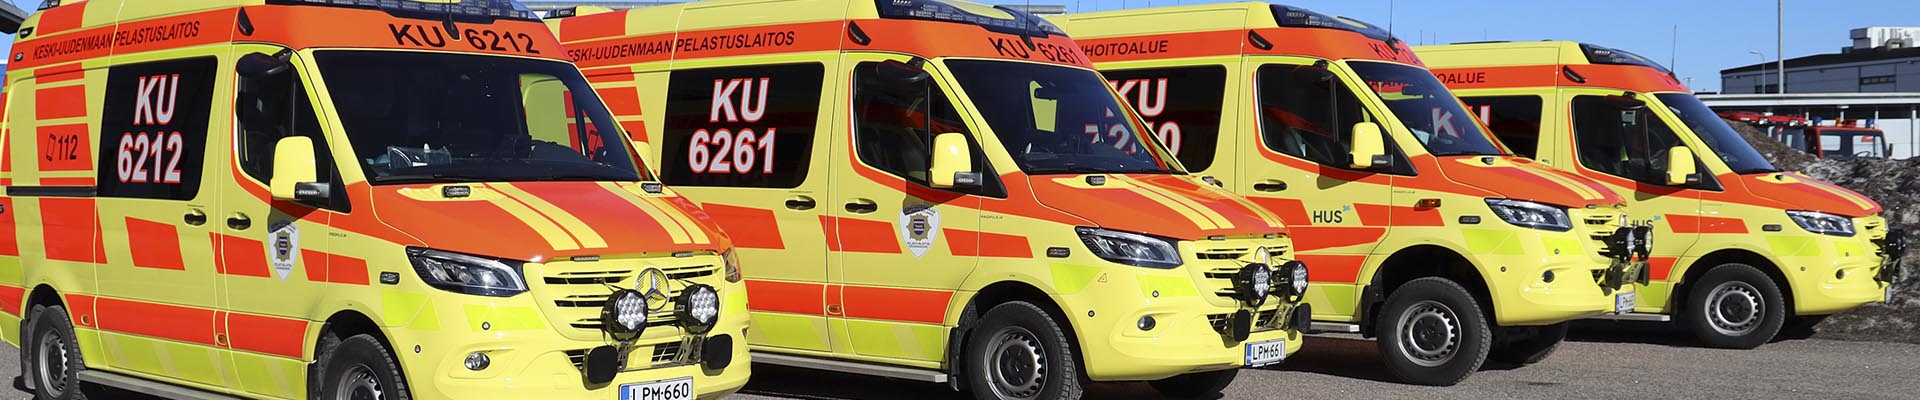 Neljä uutta ambulanssia vierekkäin paloaseman pihalla.